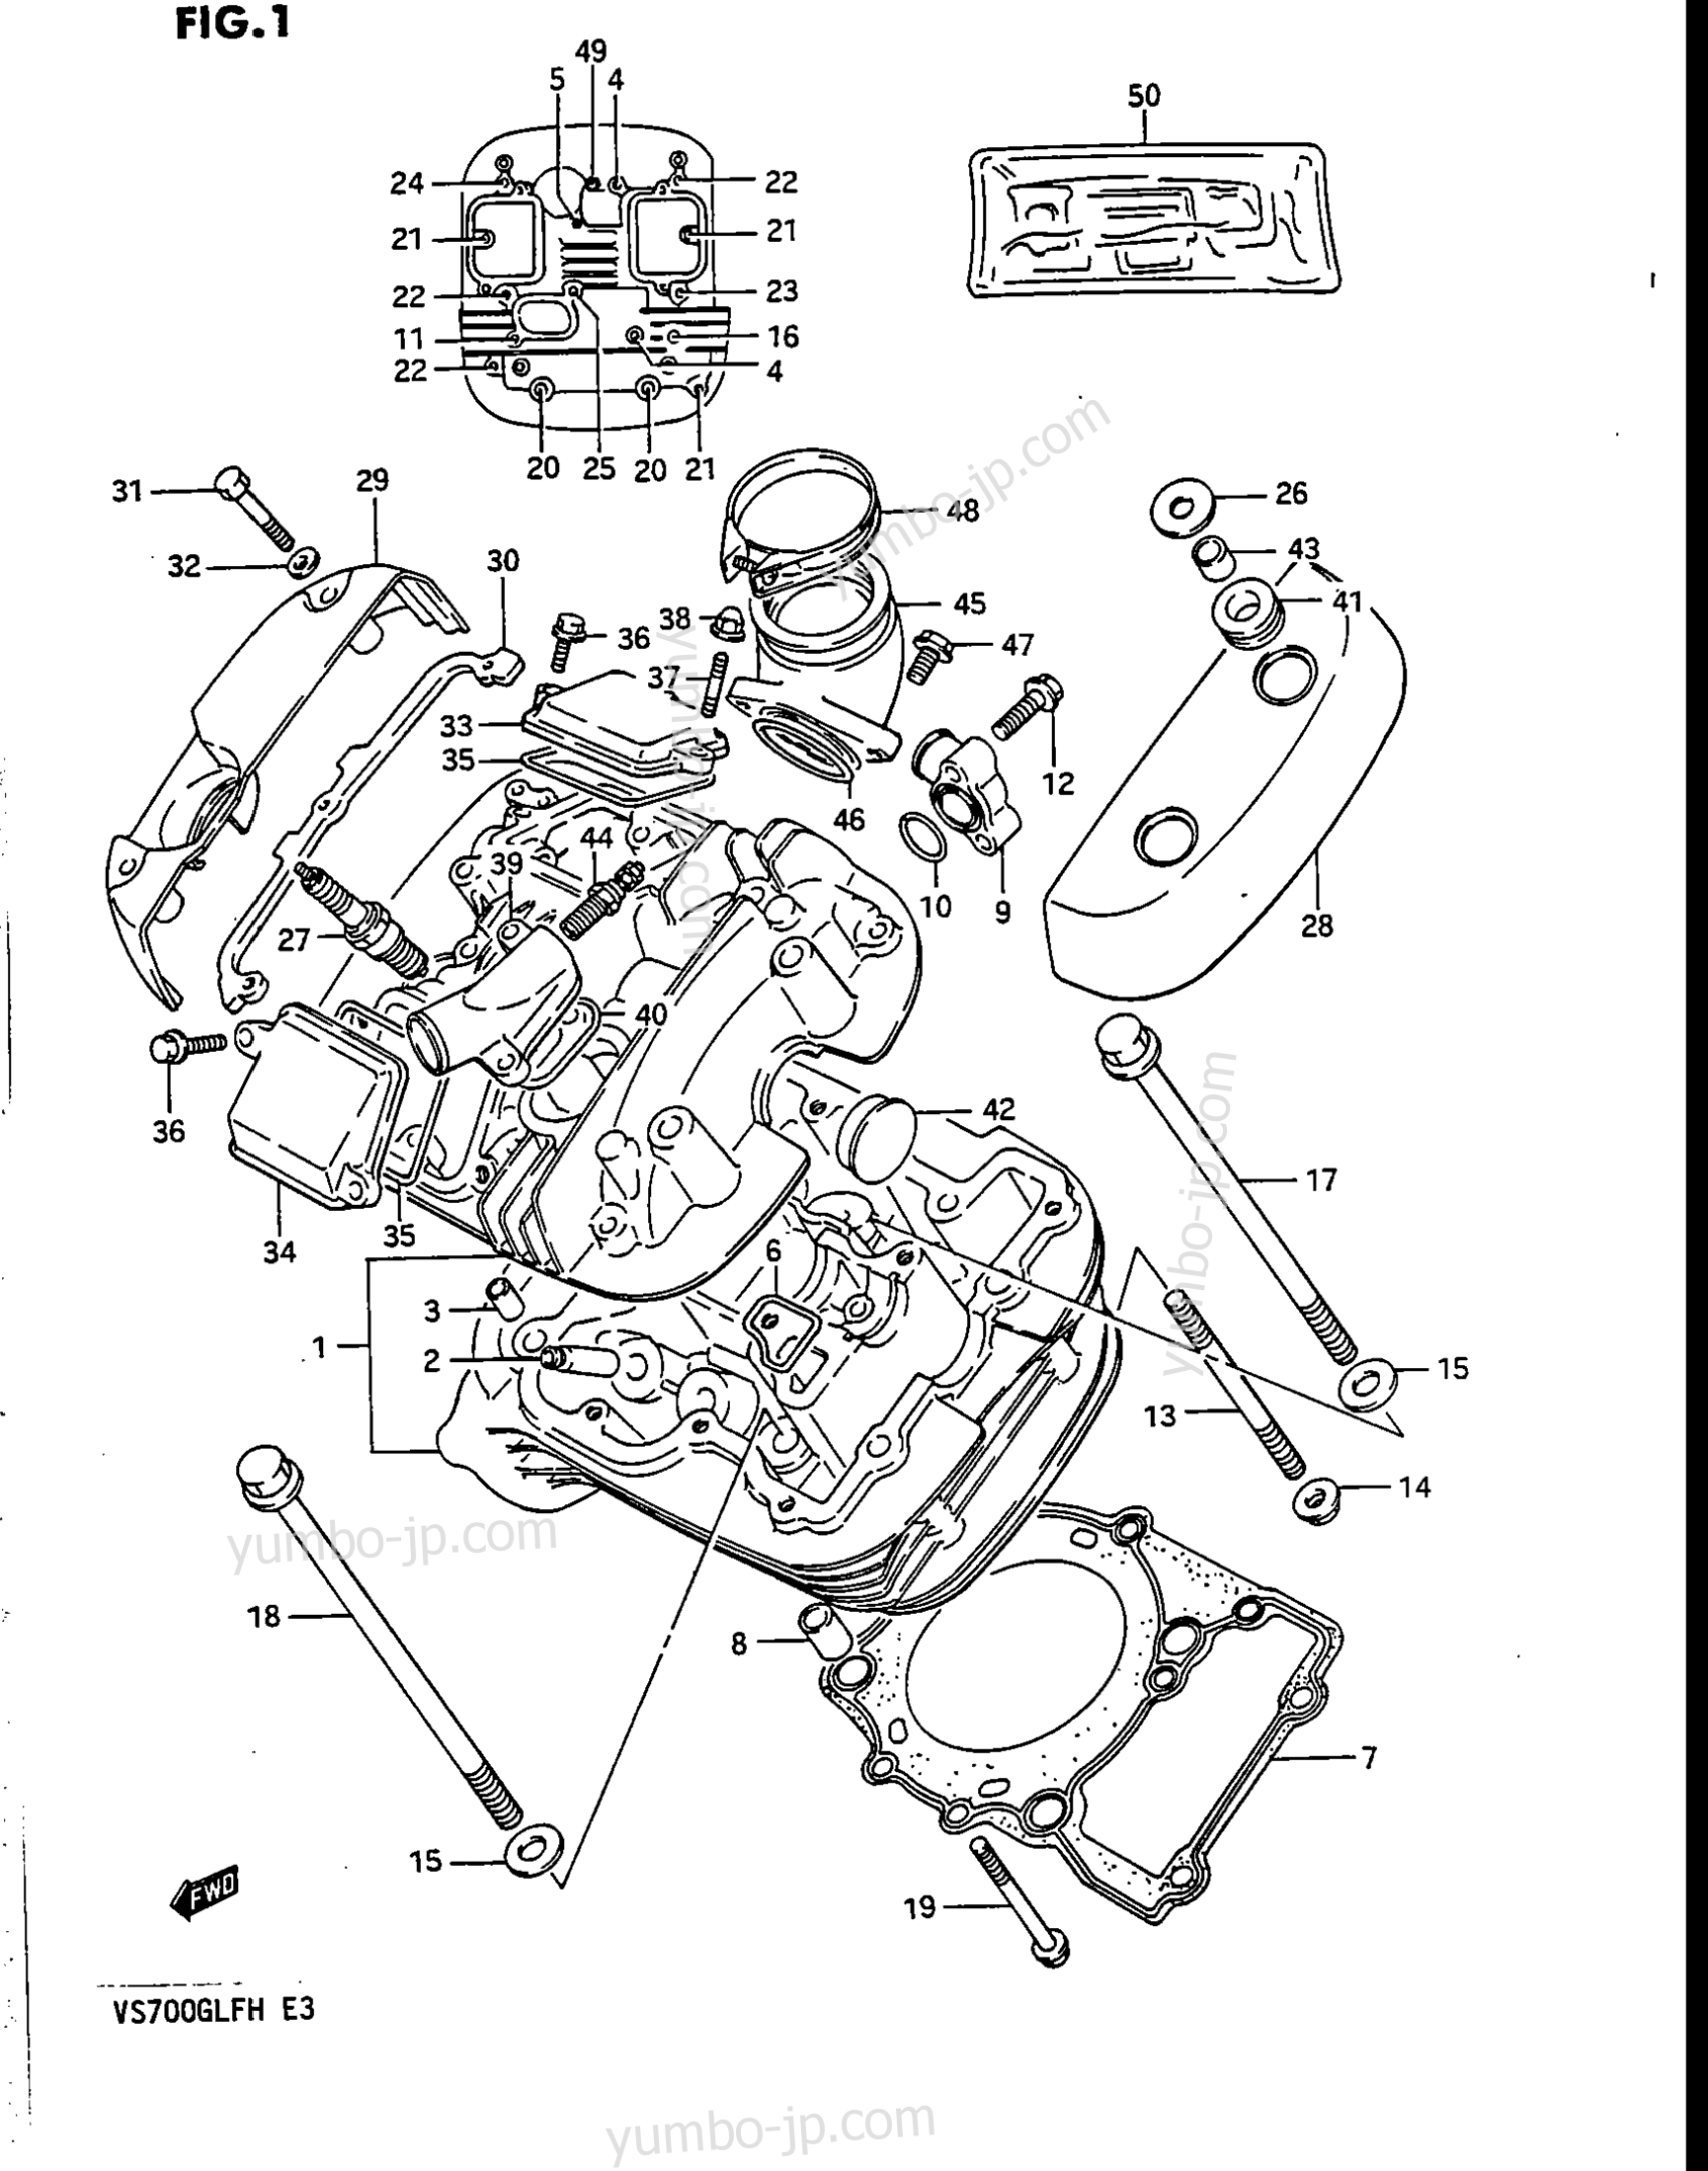 CYLINDER HEAD (FRONT) for motorcycles SUZUKI Intruder (VS700GLEF) 1987 year